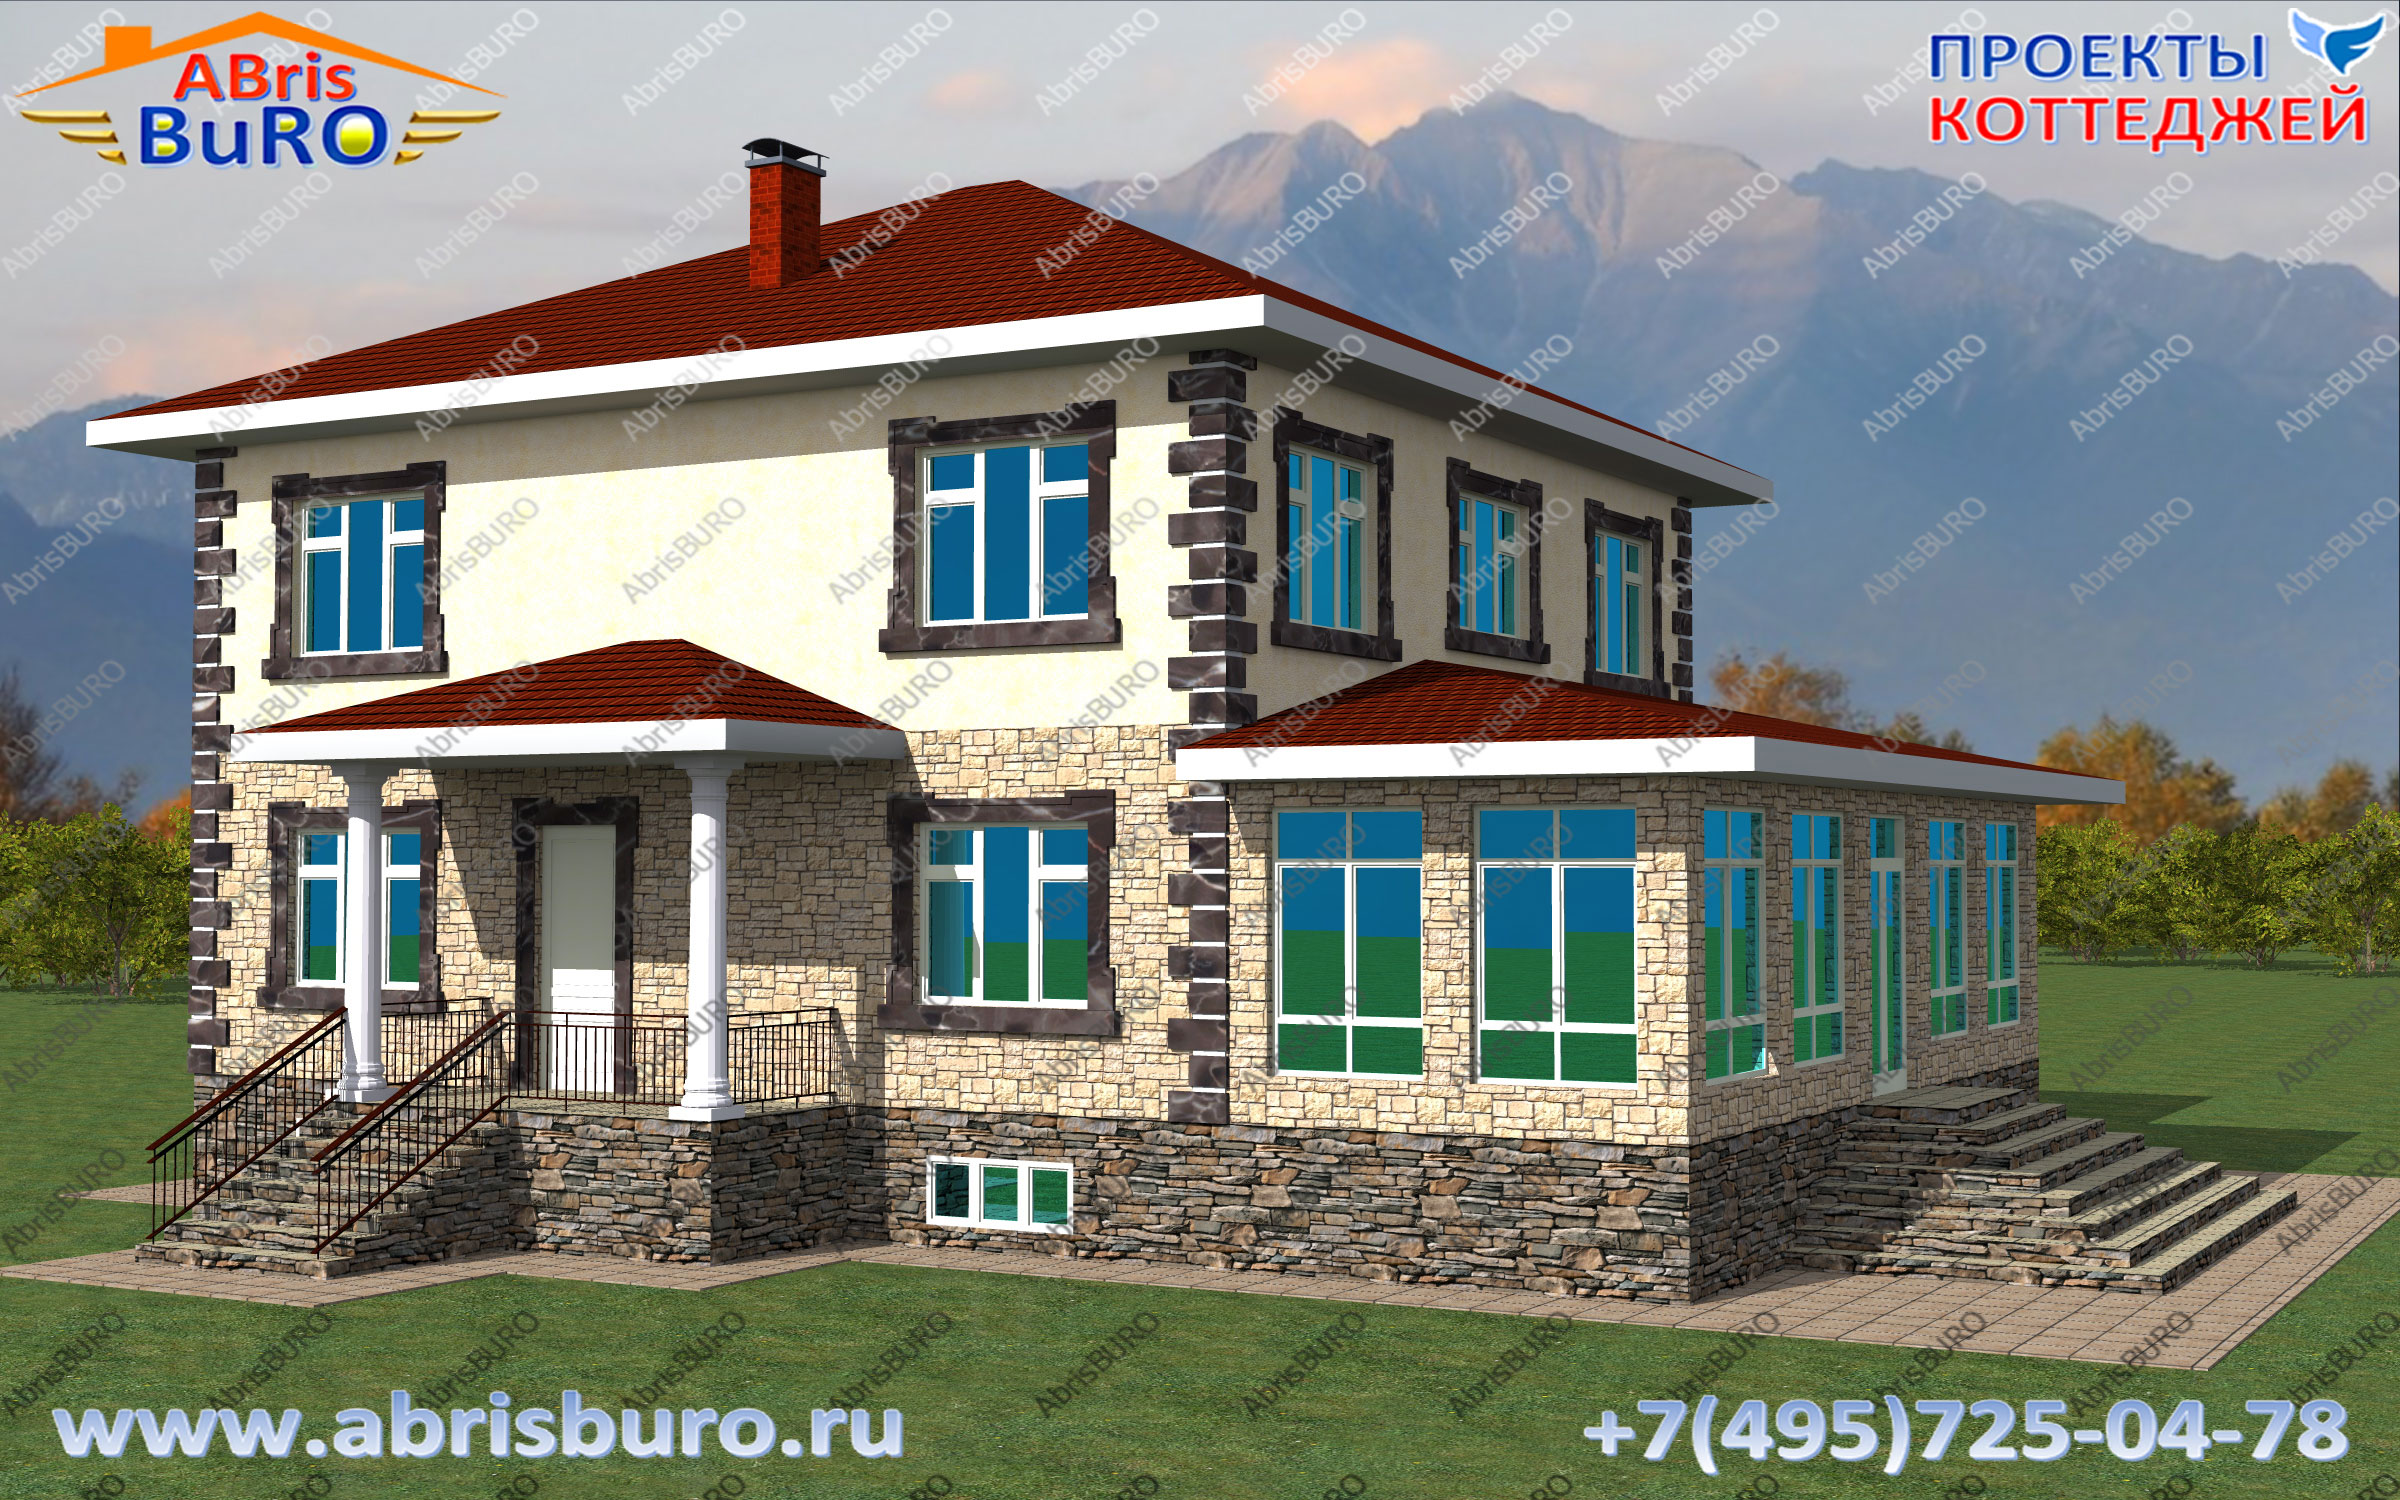 Проект дома с цокольным этажом и верандой K3082-353 www.abrisburo.ru